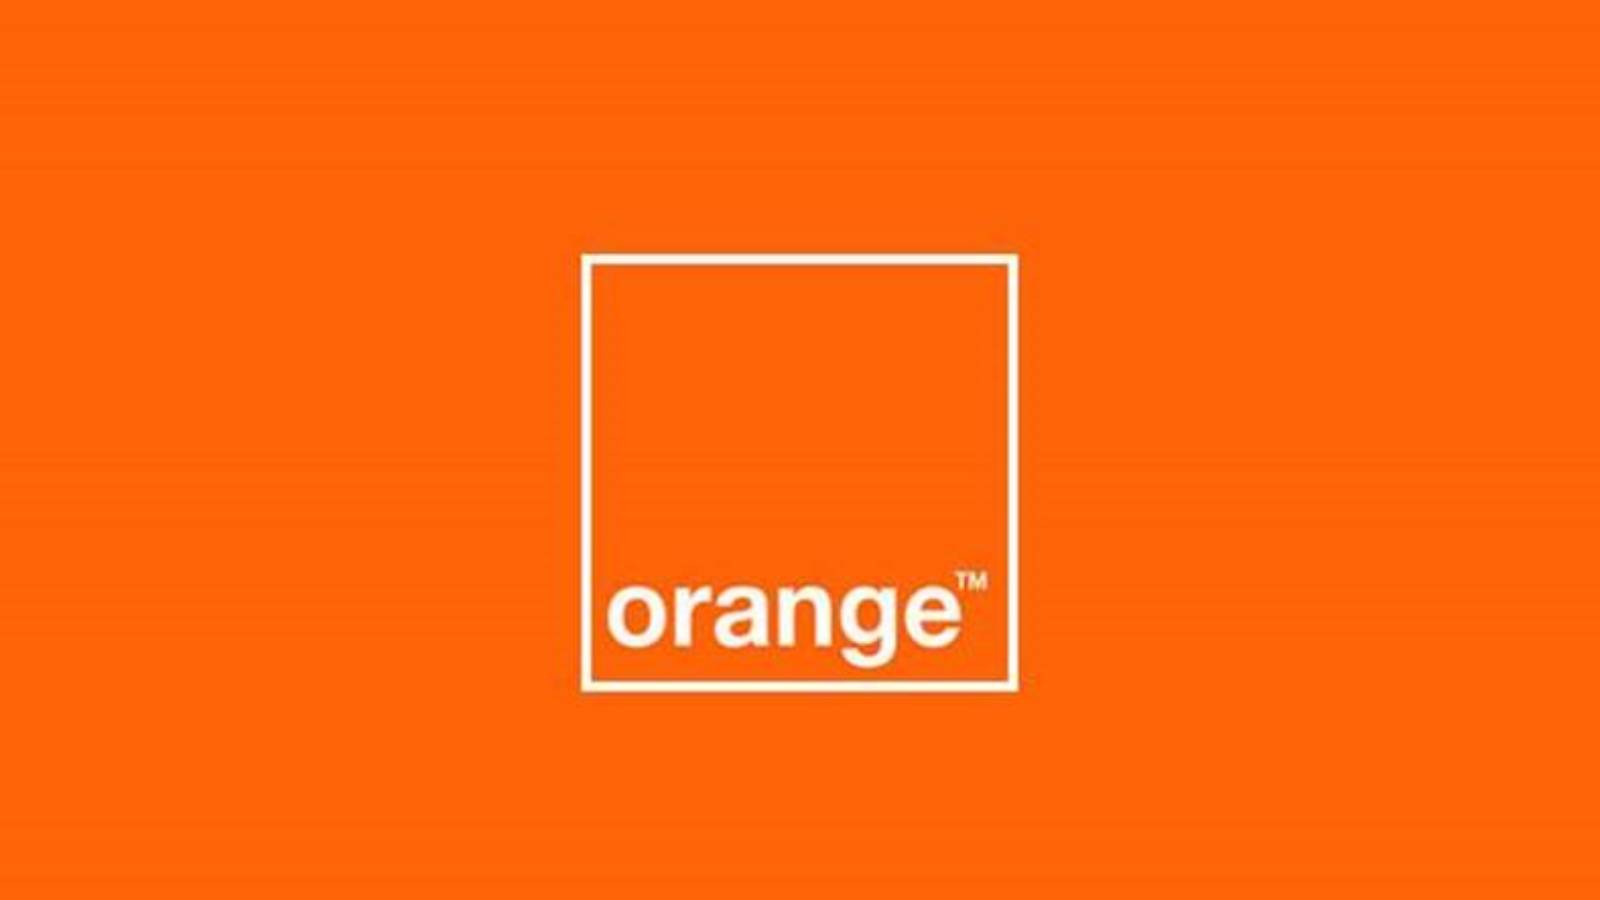 Mesure officielle Orange DERNIÈRE MINUTE GRATUITE pour les clients roumains